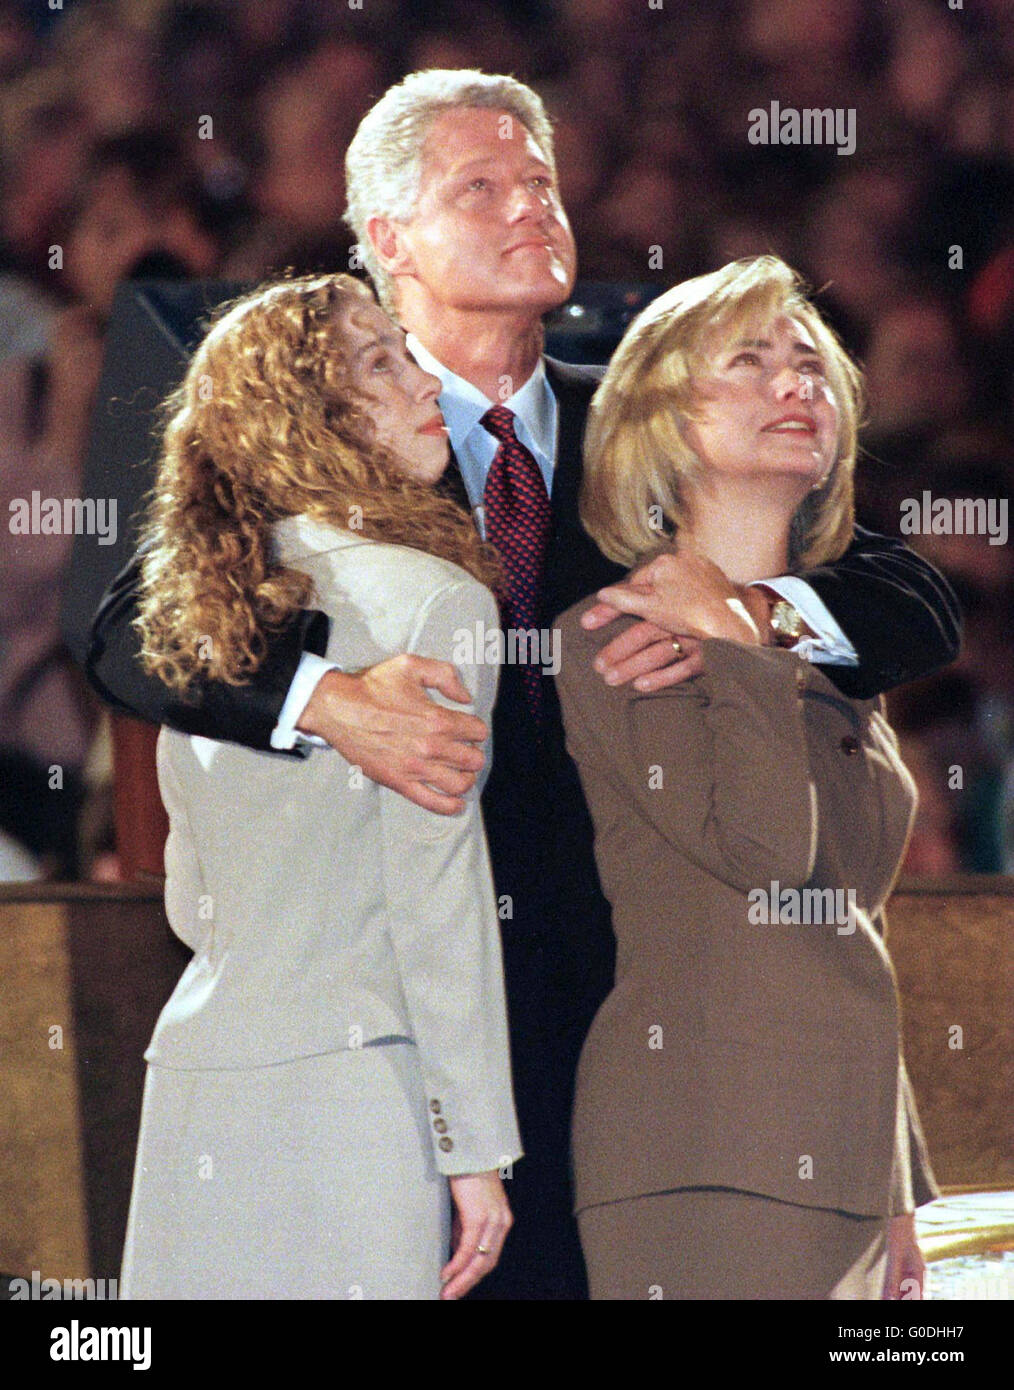 Le président américain Bill Clinton avec la première dame Hillary Clinton et sa fille Chelsea regarder sur un écran géant à Little Rock, Arkansas, les résultats définitifs de l'élections de novembre 1996 qui l'a amené un deuxième mandat comme président des États-Unis. Banque D'Images